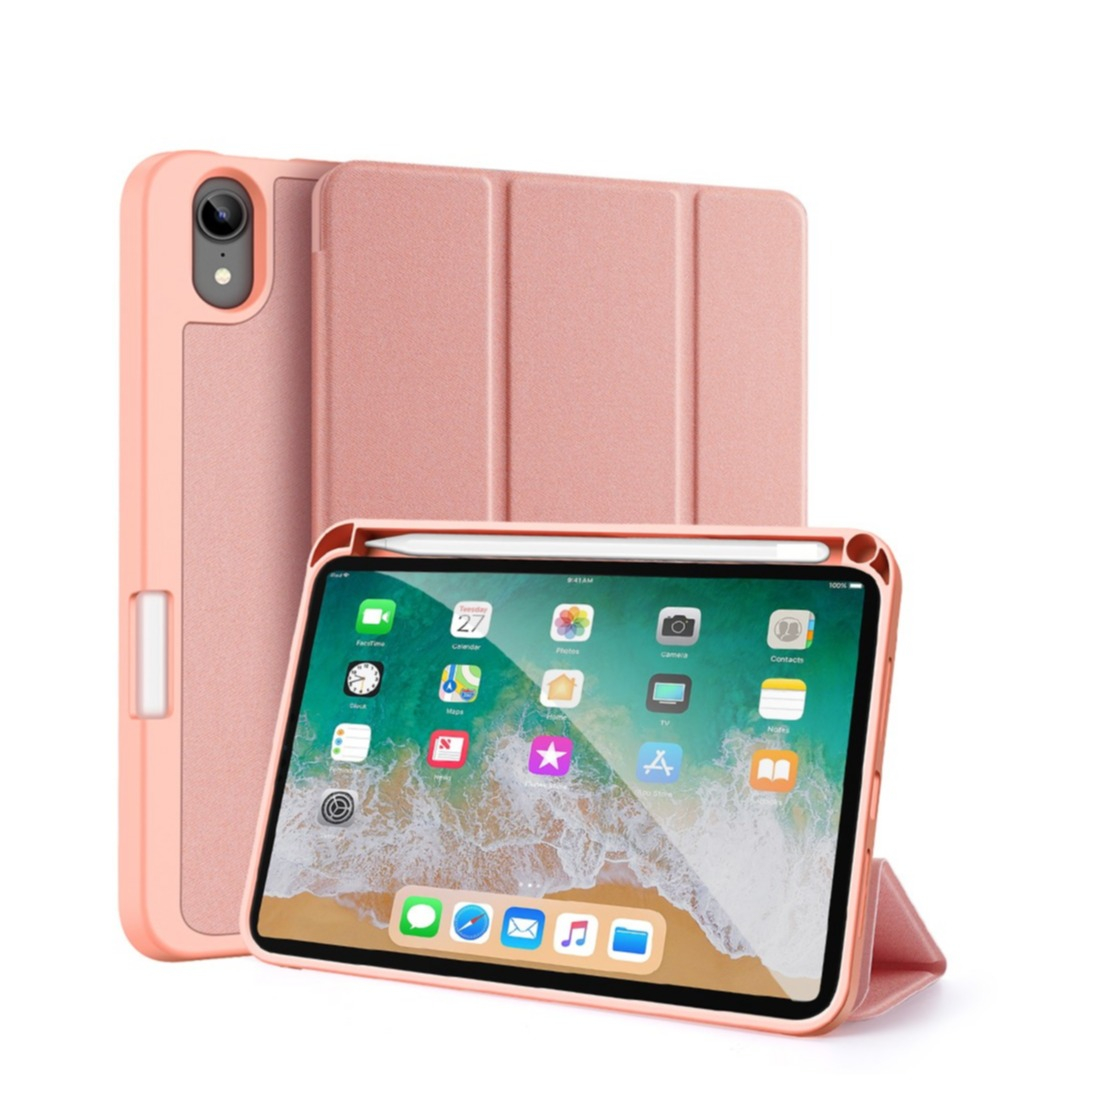 Apple Smart - Flip-Hülle für Tablet - Electric Orange - für iPad mini (6.  Generation) - Tablet-Abdeckung - Einkauf & Preis